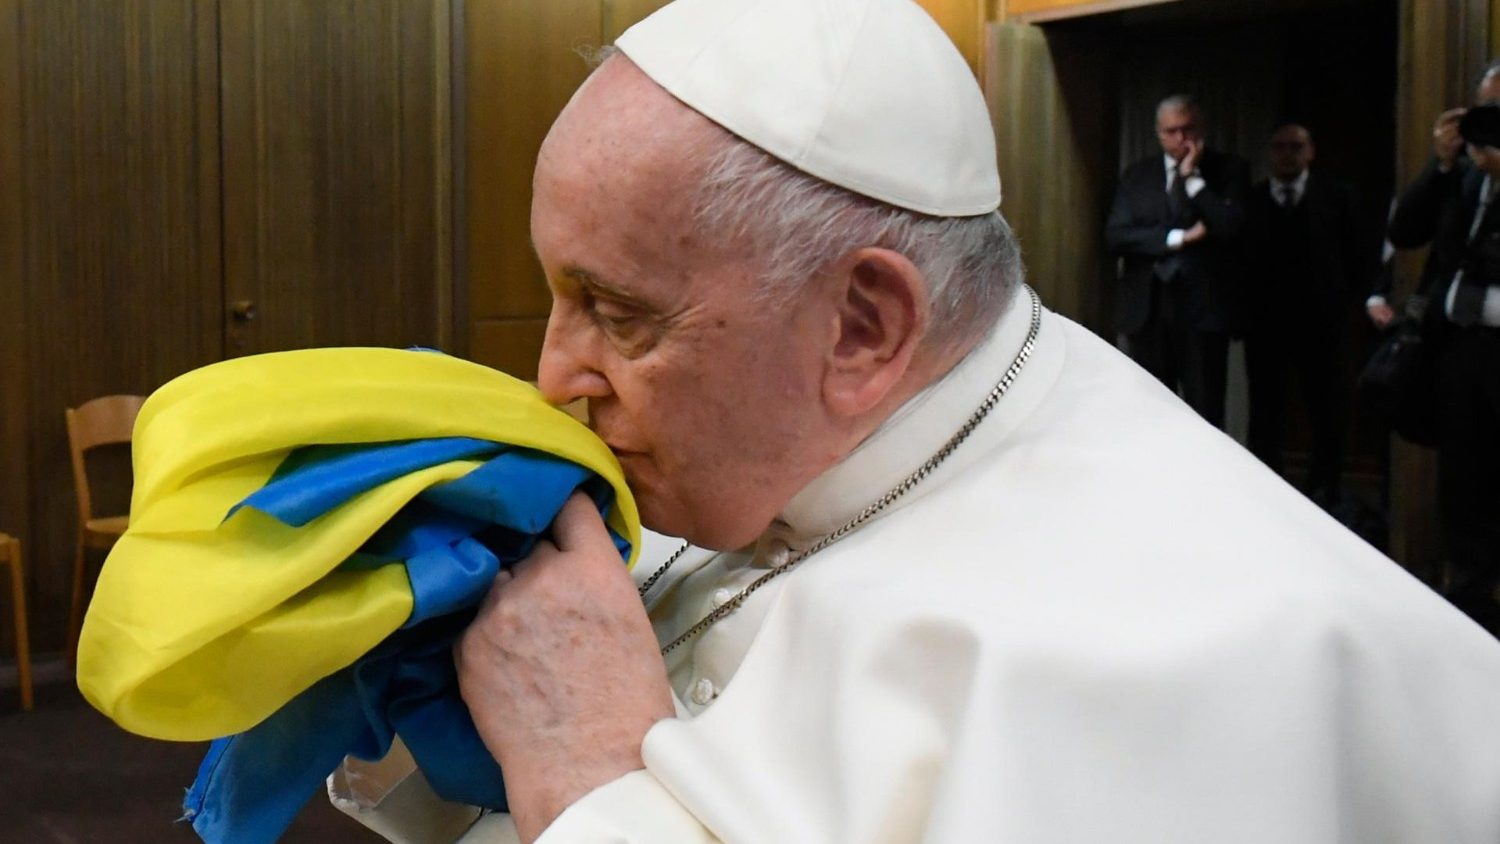 La comunità ucraina in Italia critica il Papa: "Offensivo chiedere di arrenderci a un boia come Putin"